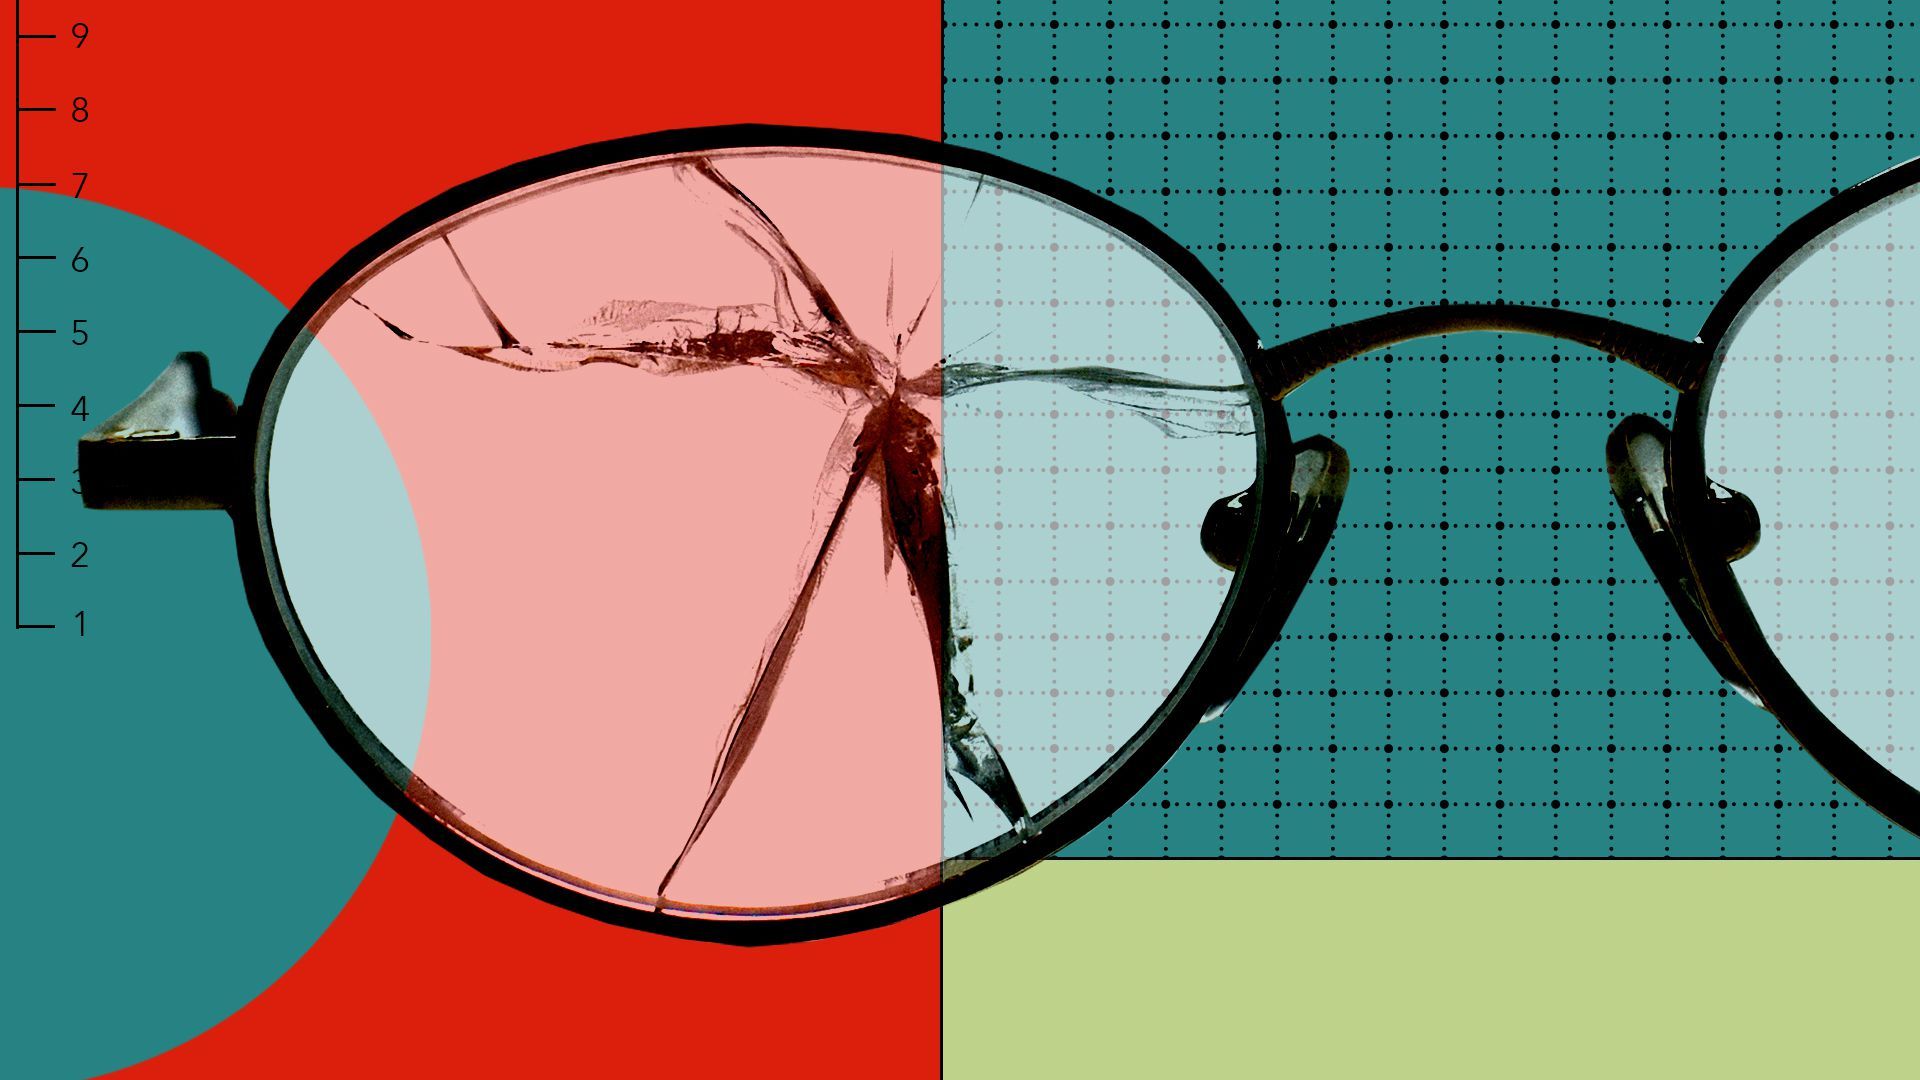 Illustration of broken eyeglasses